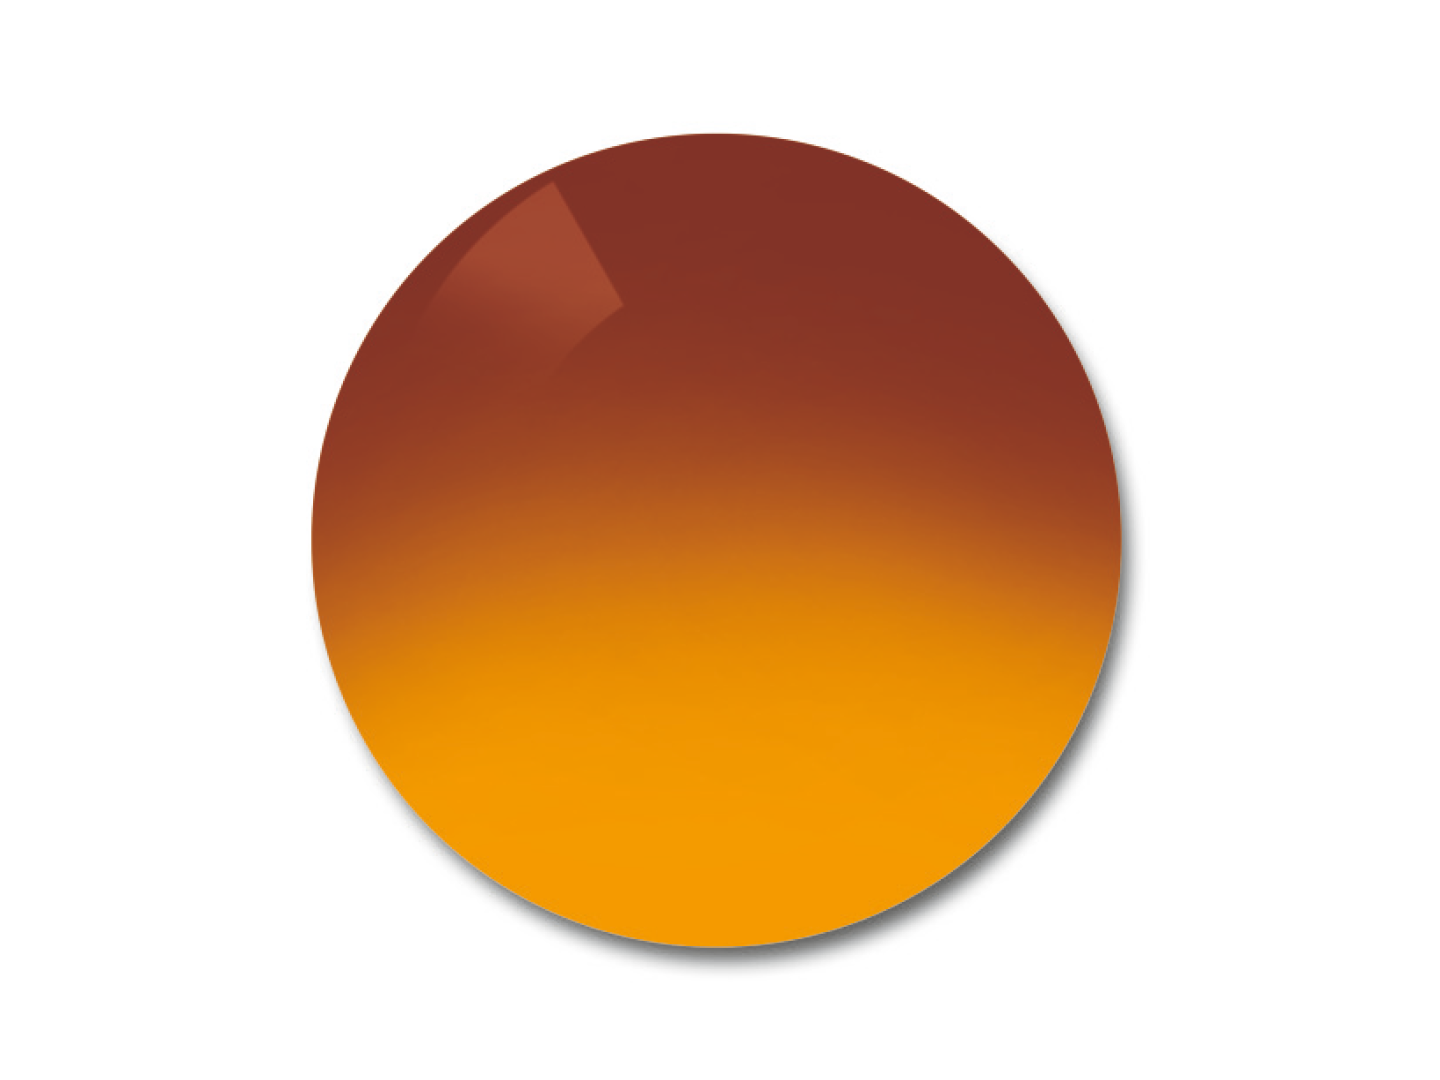 Príklad farebného odtieňa šošoviek ProGolf Gradient 75/25%. 